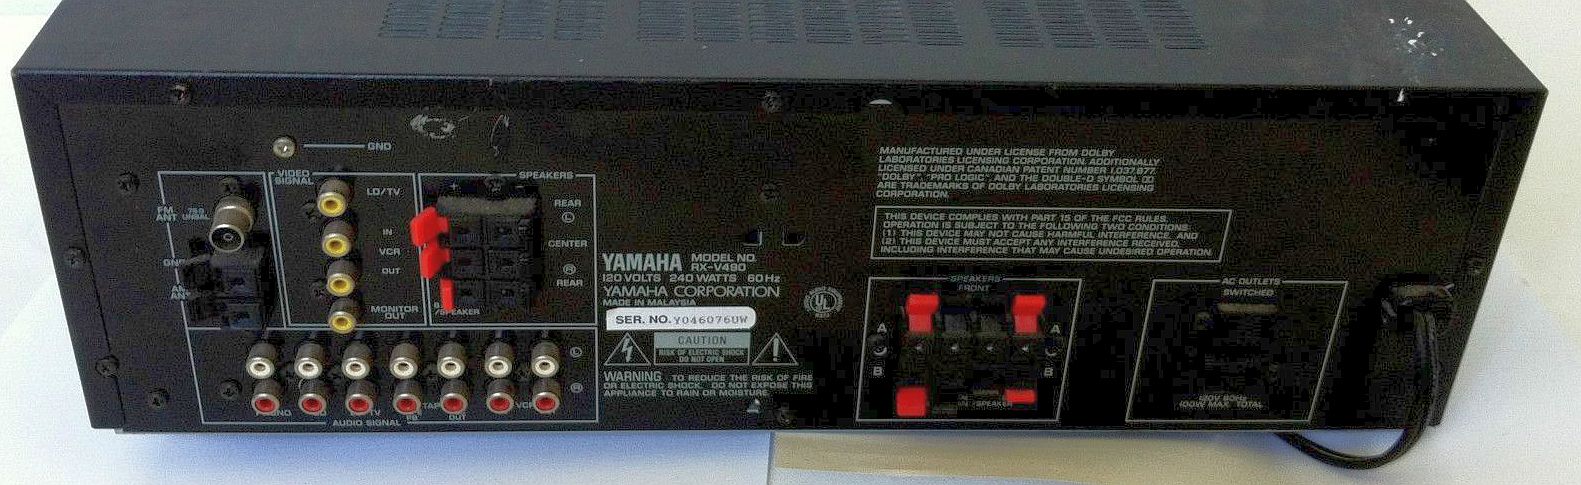 Yamaha RX-V490 - AV Receiver | AudioBaza